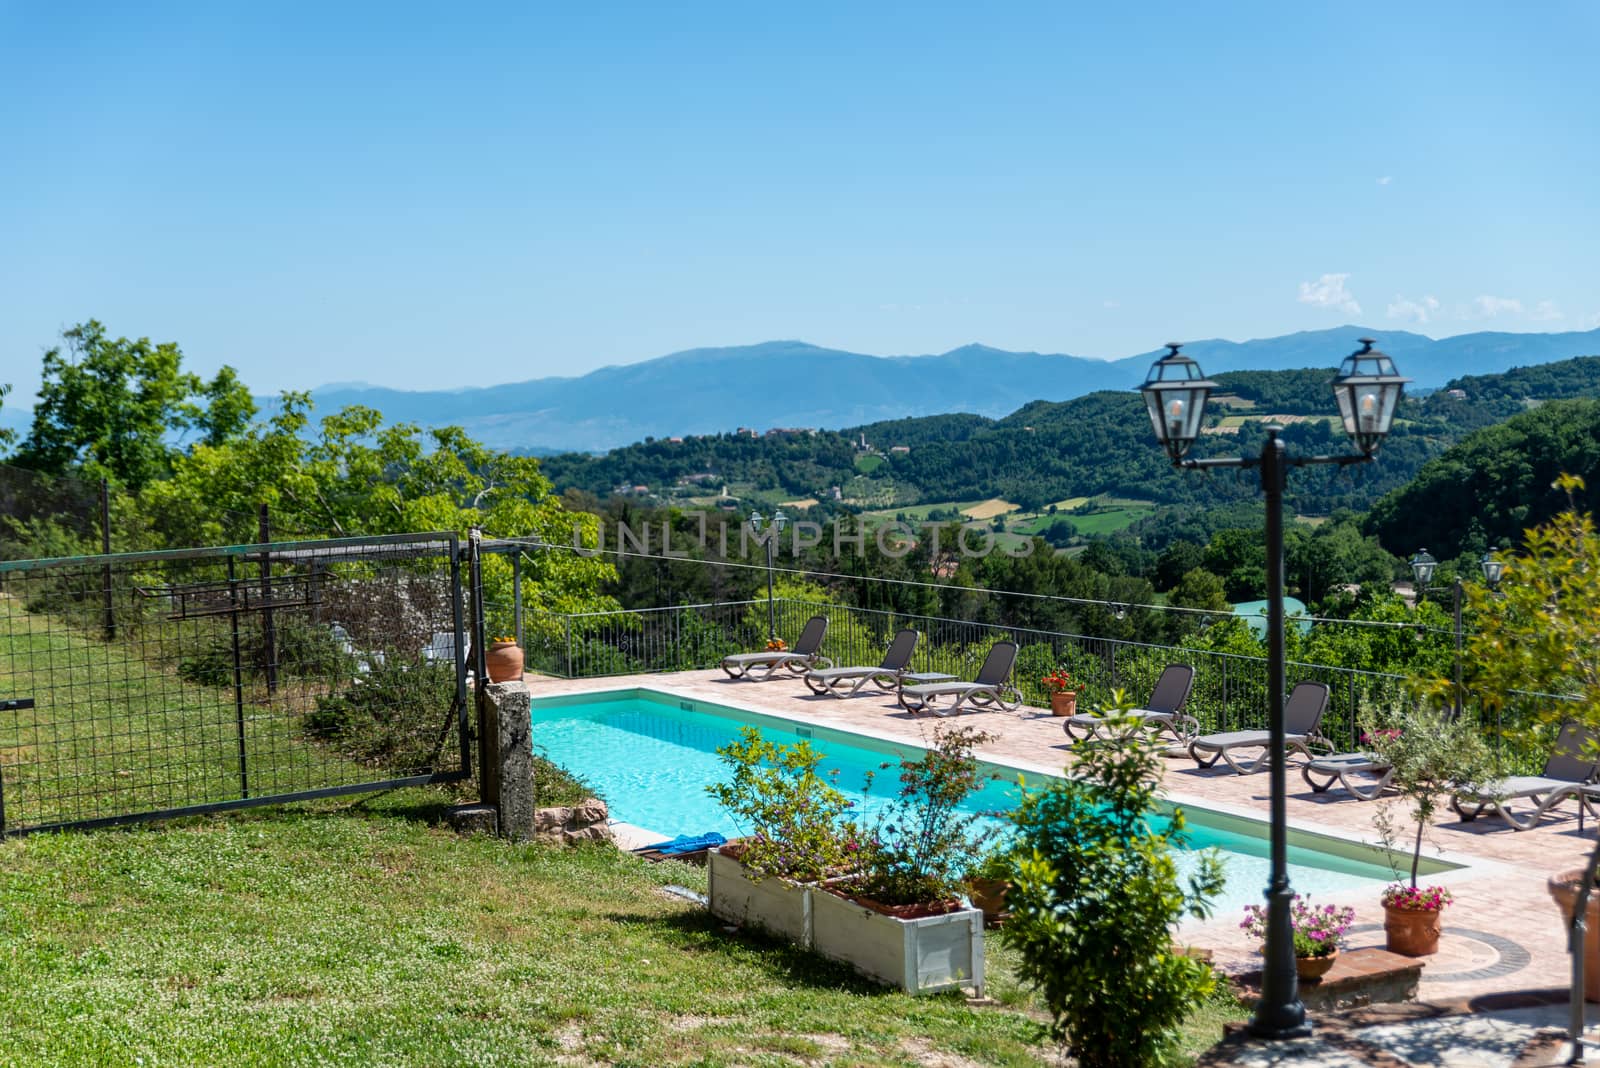 macerino,italy june 02 2020 :private macerino swimming pool with panoramic views